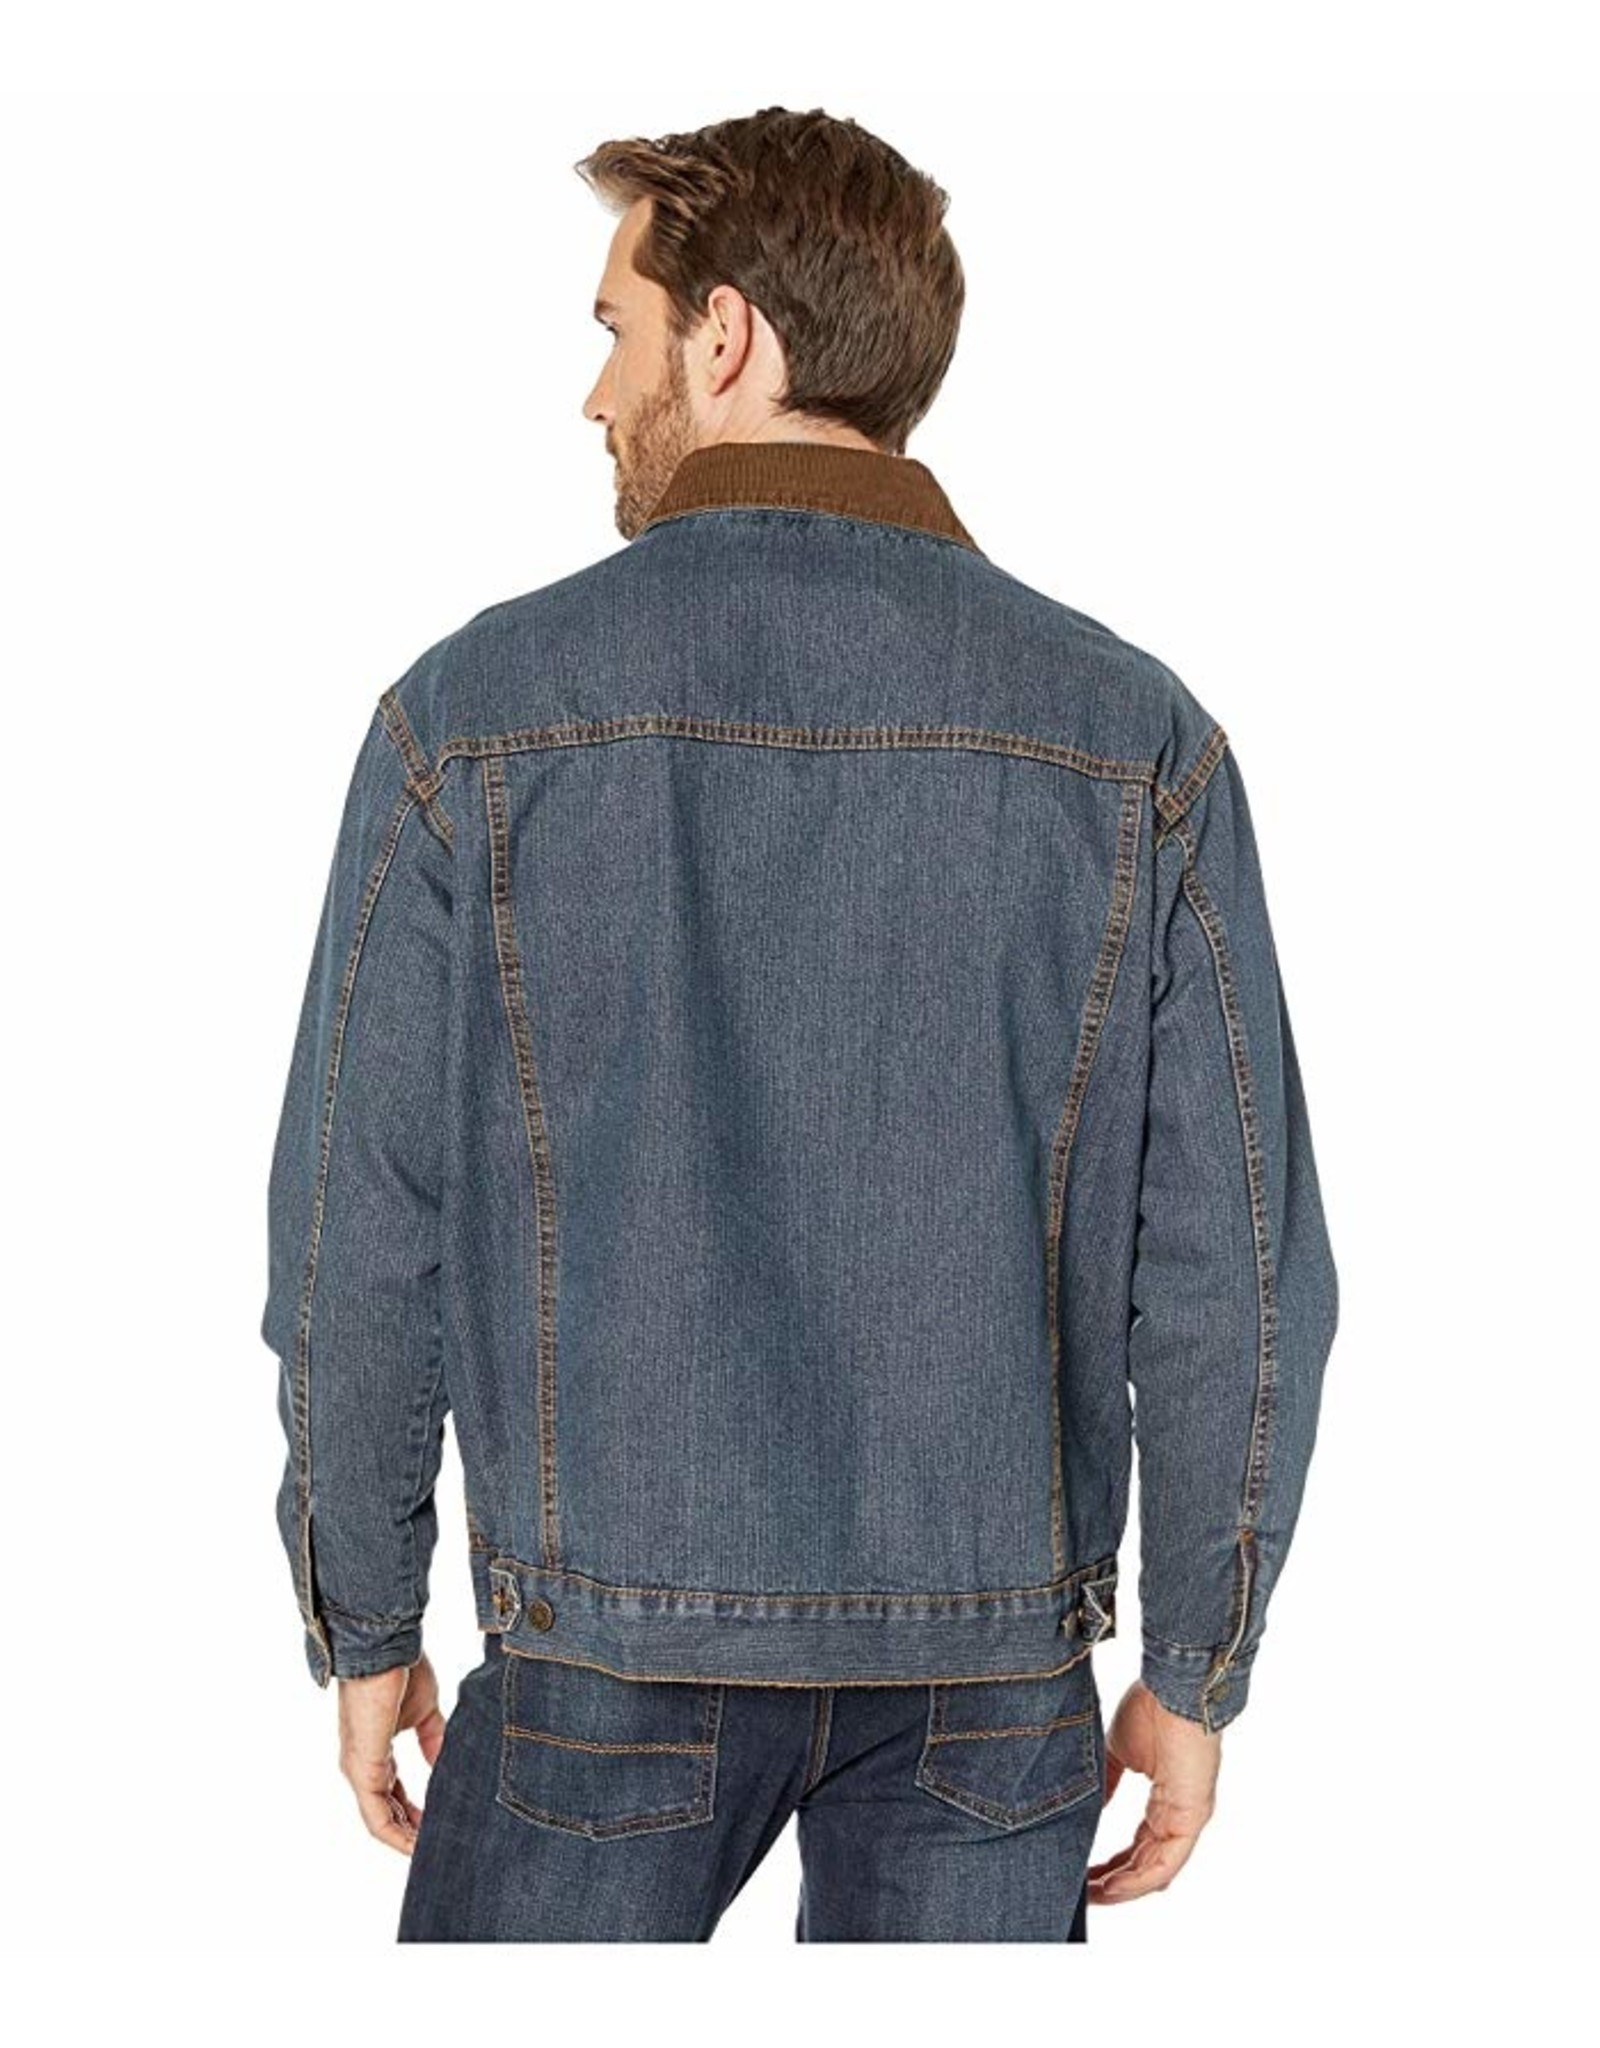 Wrangler - Men's Blanket Lined Denim Jacket -1074265RT